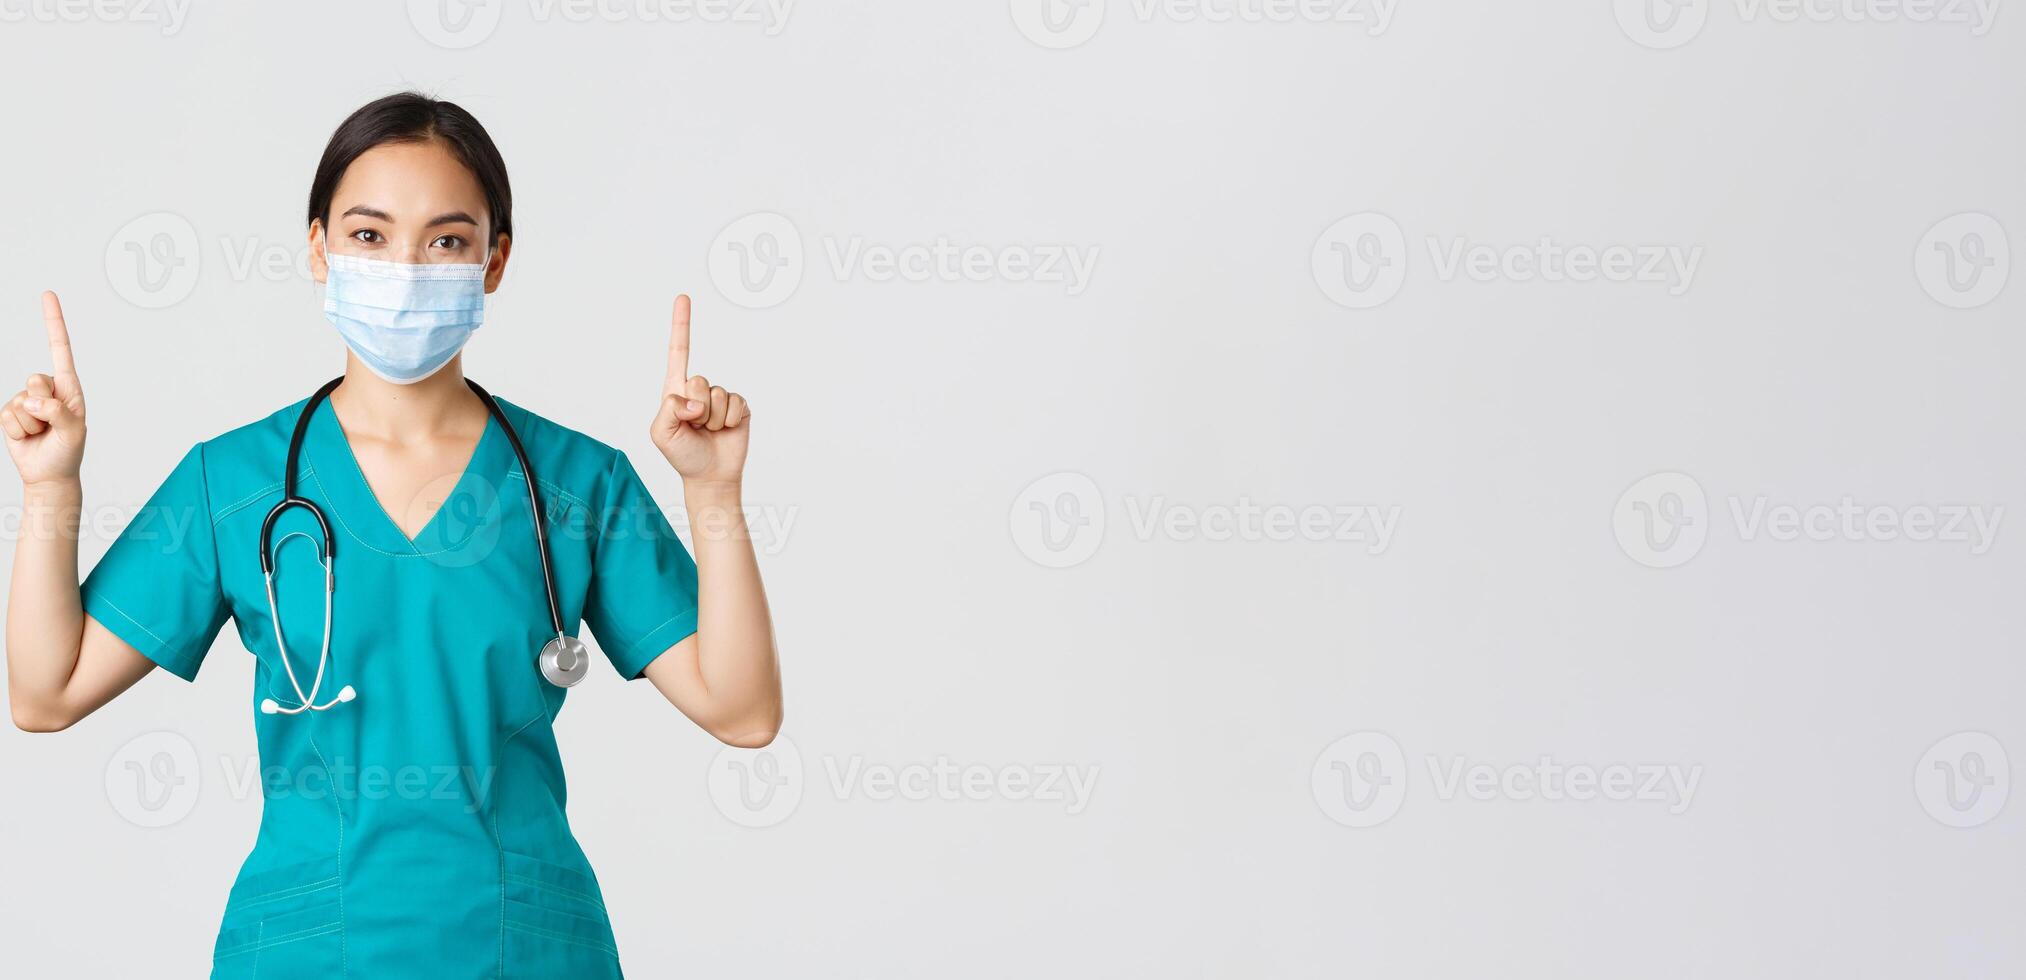 covid19, coronavirus sjukdom, sjukvård arbetare begrepp. ung professionell asiatisk kvinna läkare, sjuksköterska i medicinsk mask och skrubbar, pekande fingrar upp, som visar sätt, reklam foto